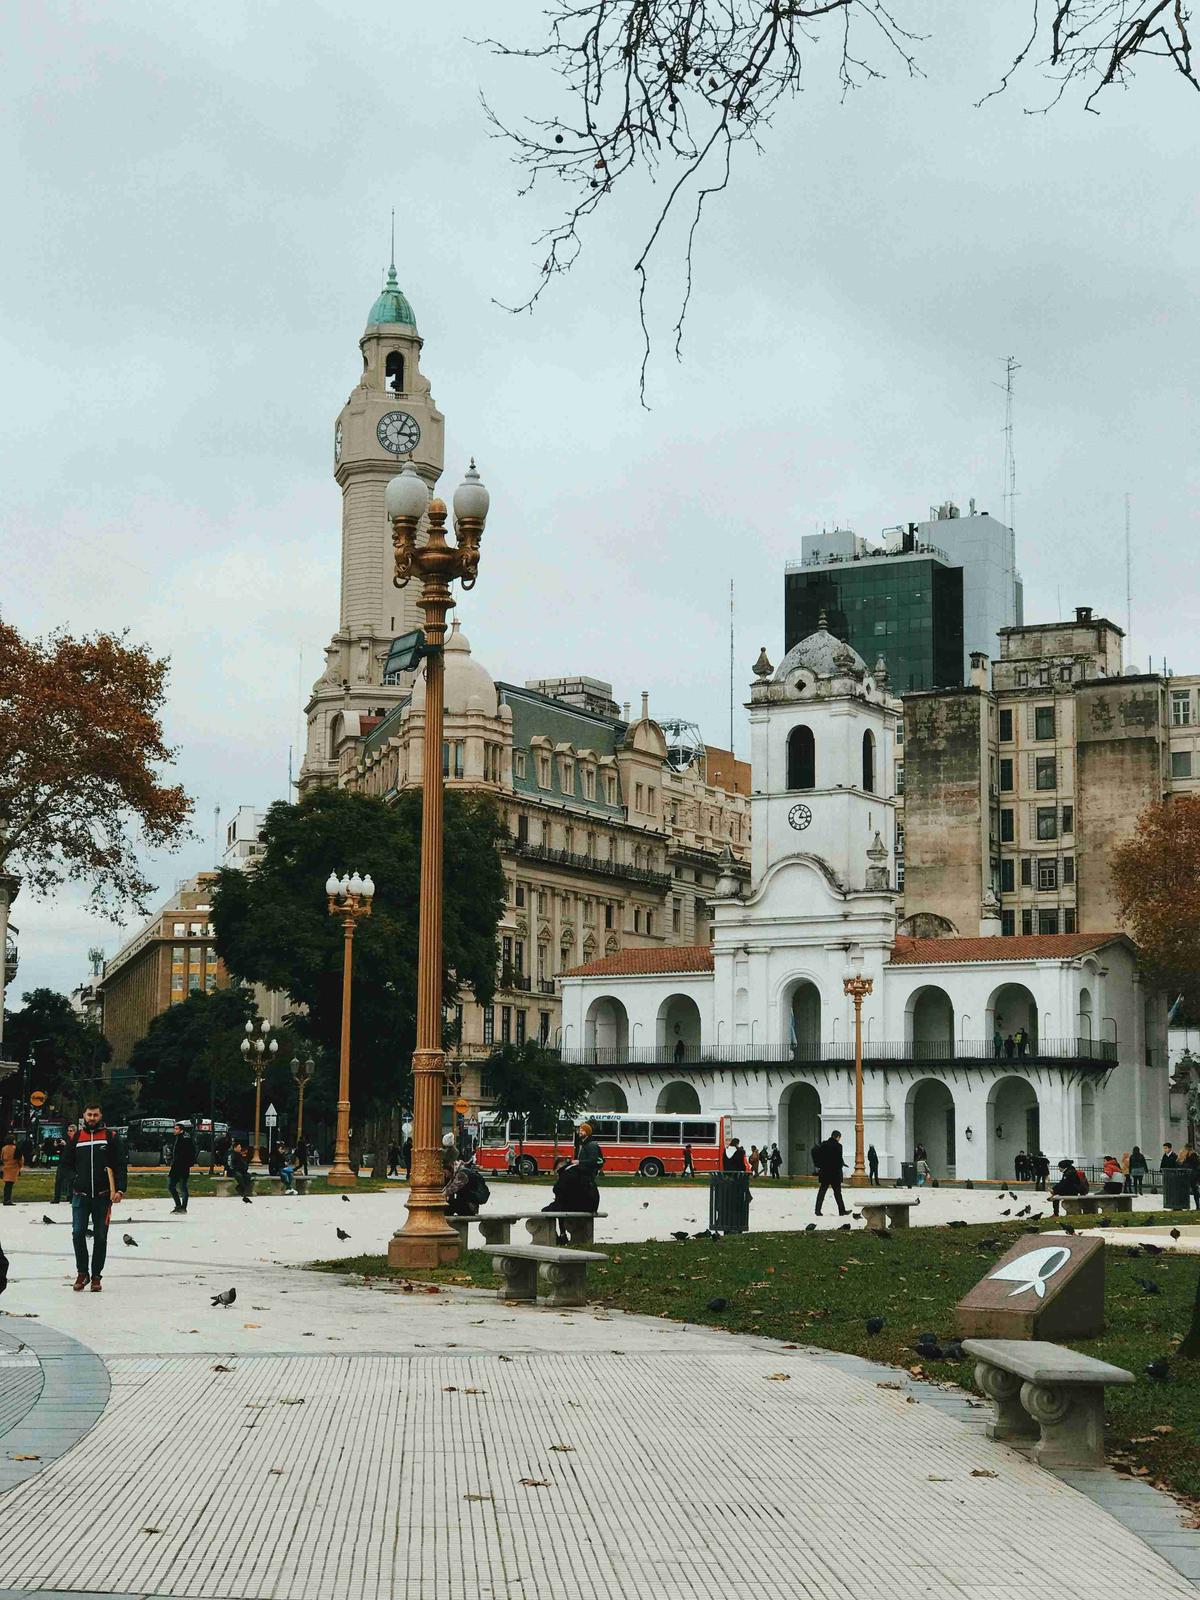 Autumn Day sa City Square na may Historic Clock Tower